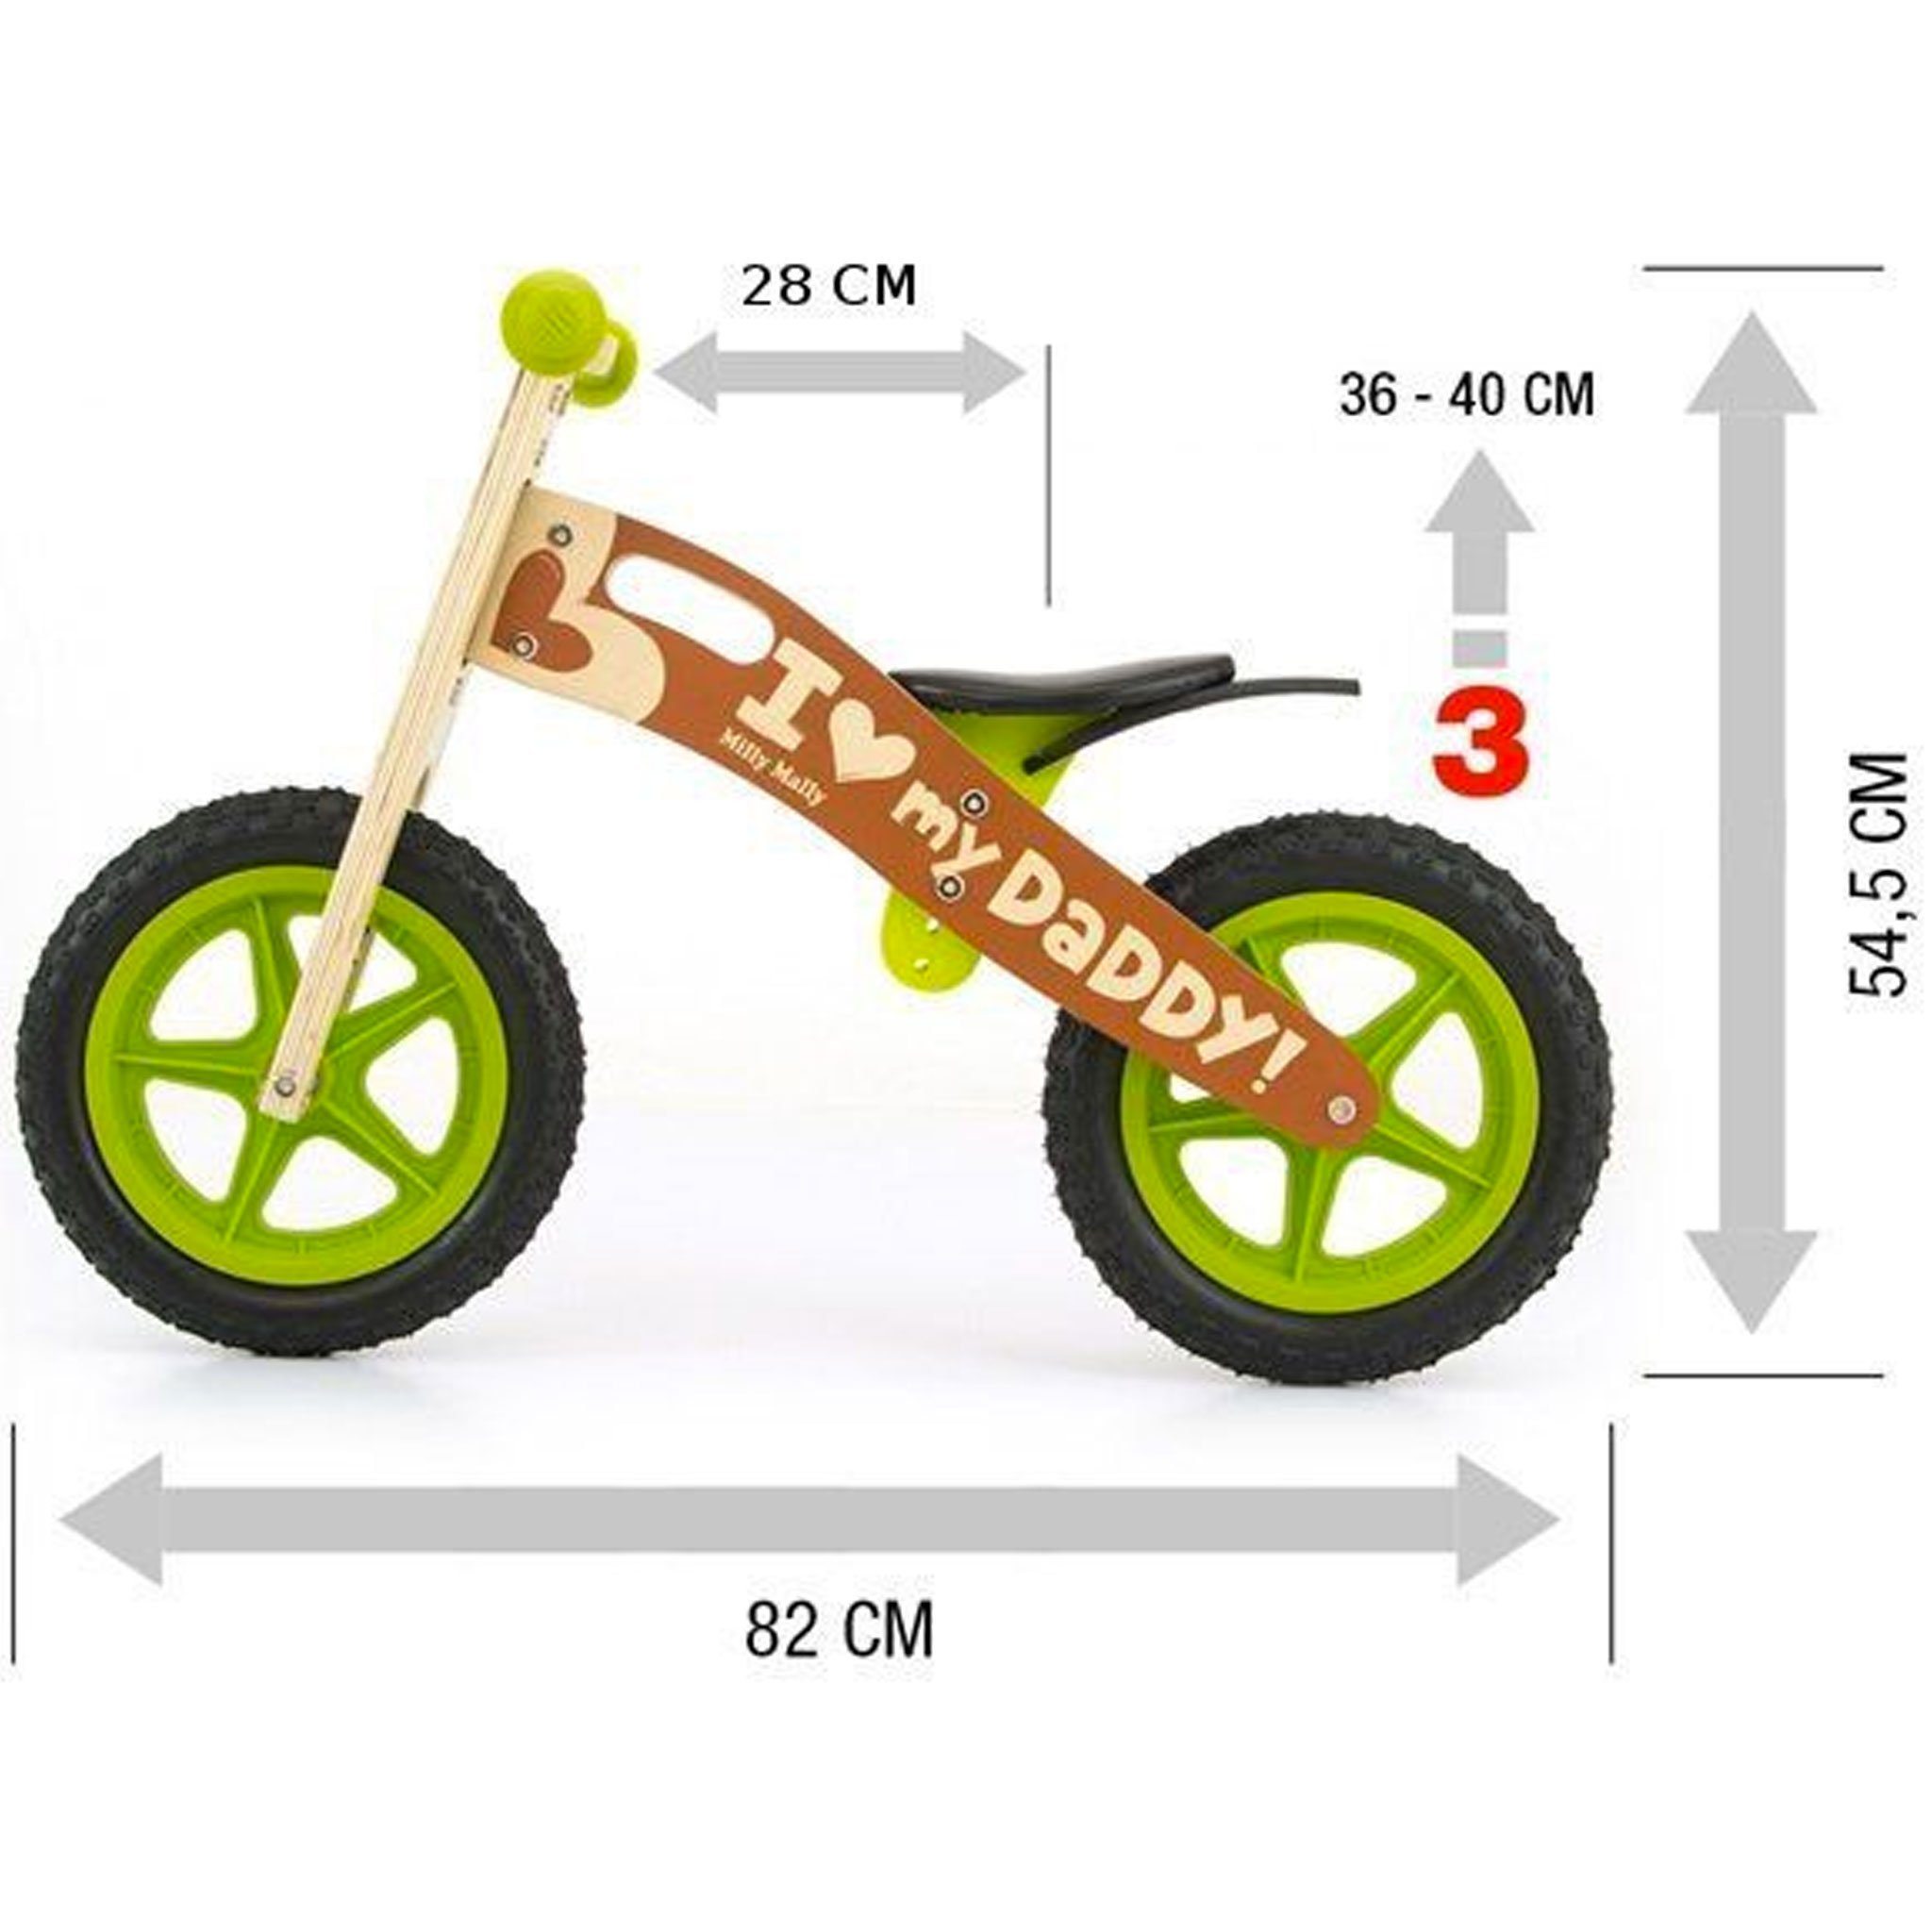 PM0472-cavalcabile-ruote-bici-senza-pedali-bambini-equilibrio-balance-bike-giochi-esterno-mobilita-crescita-legno-betulla-all-terrain-misure.jpg